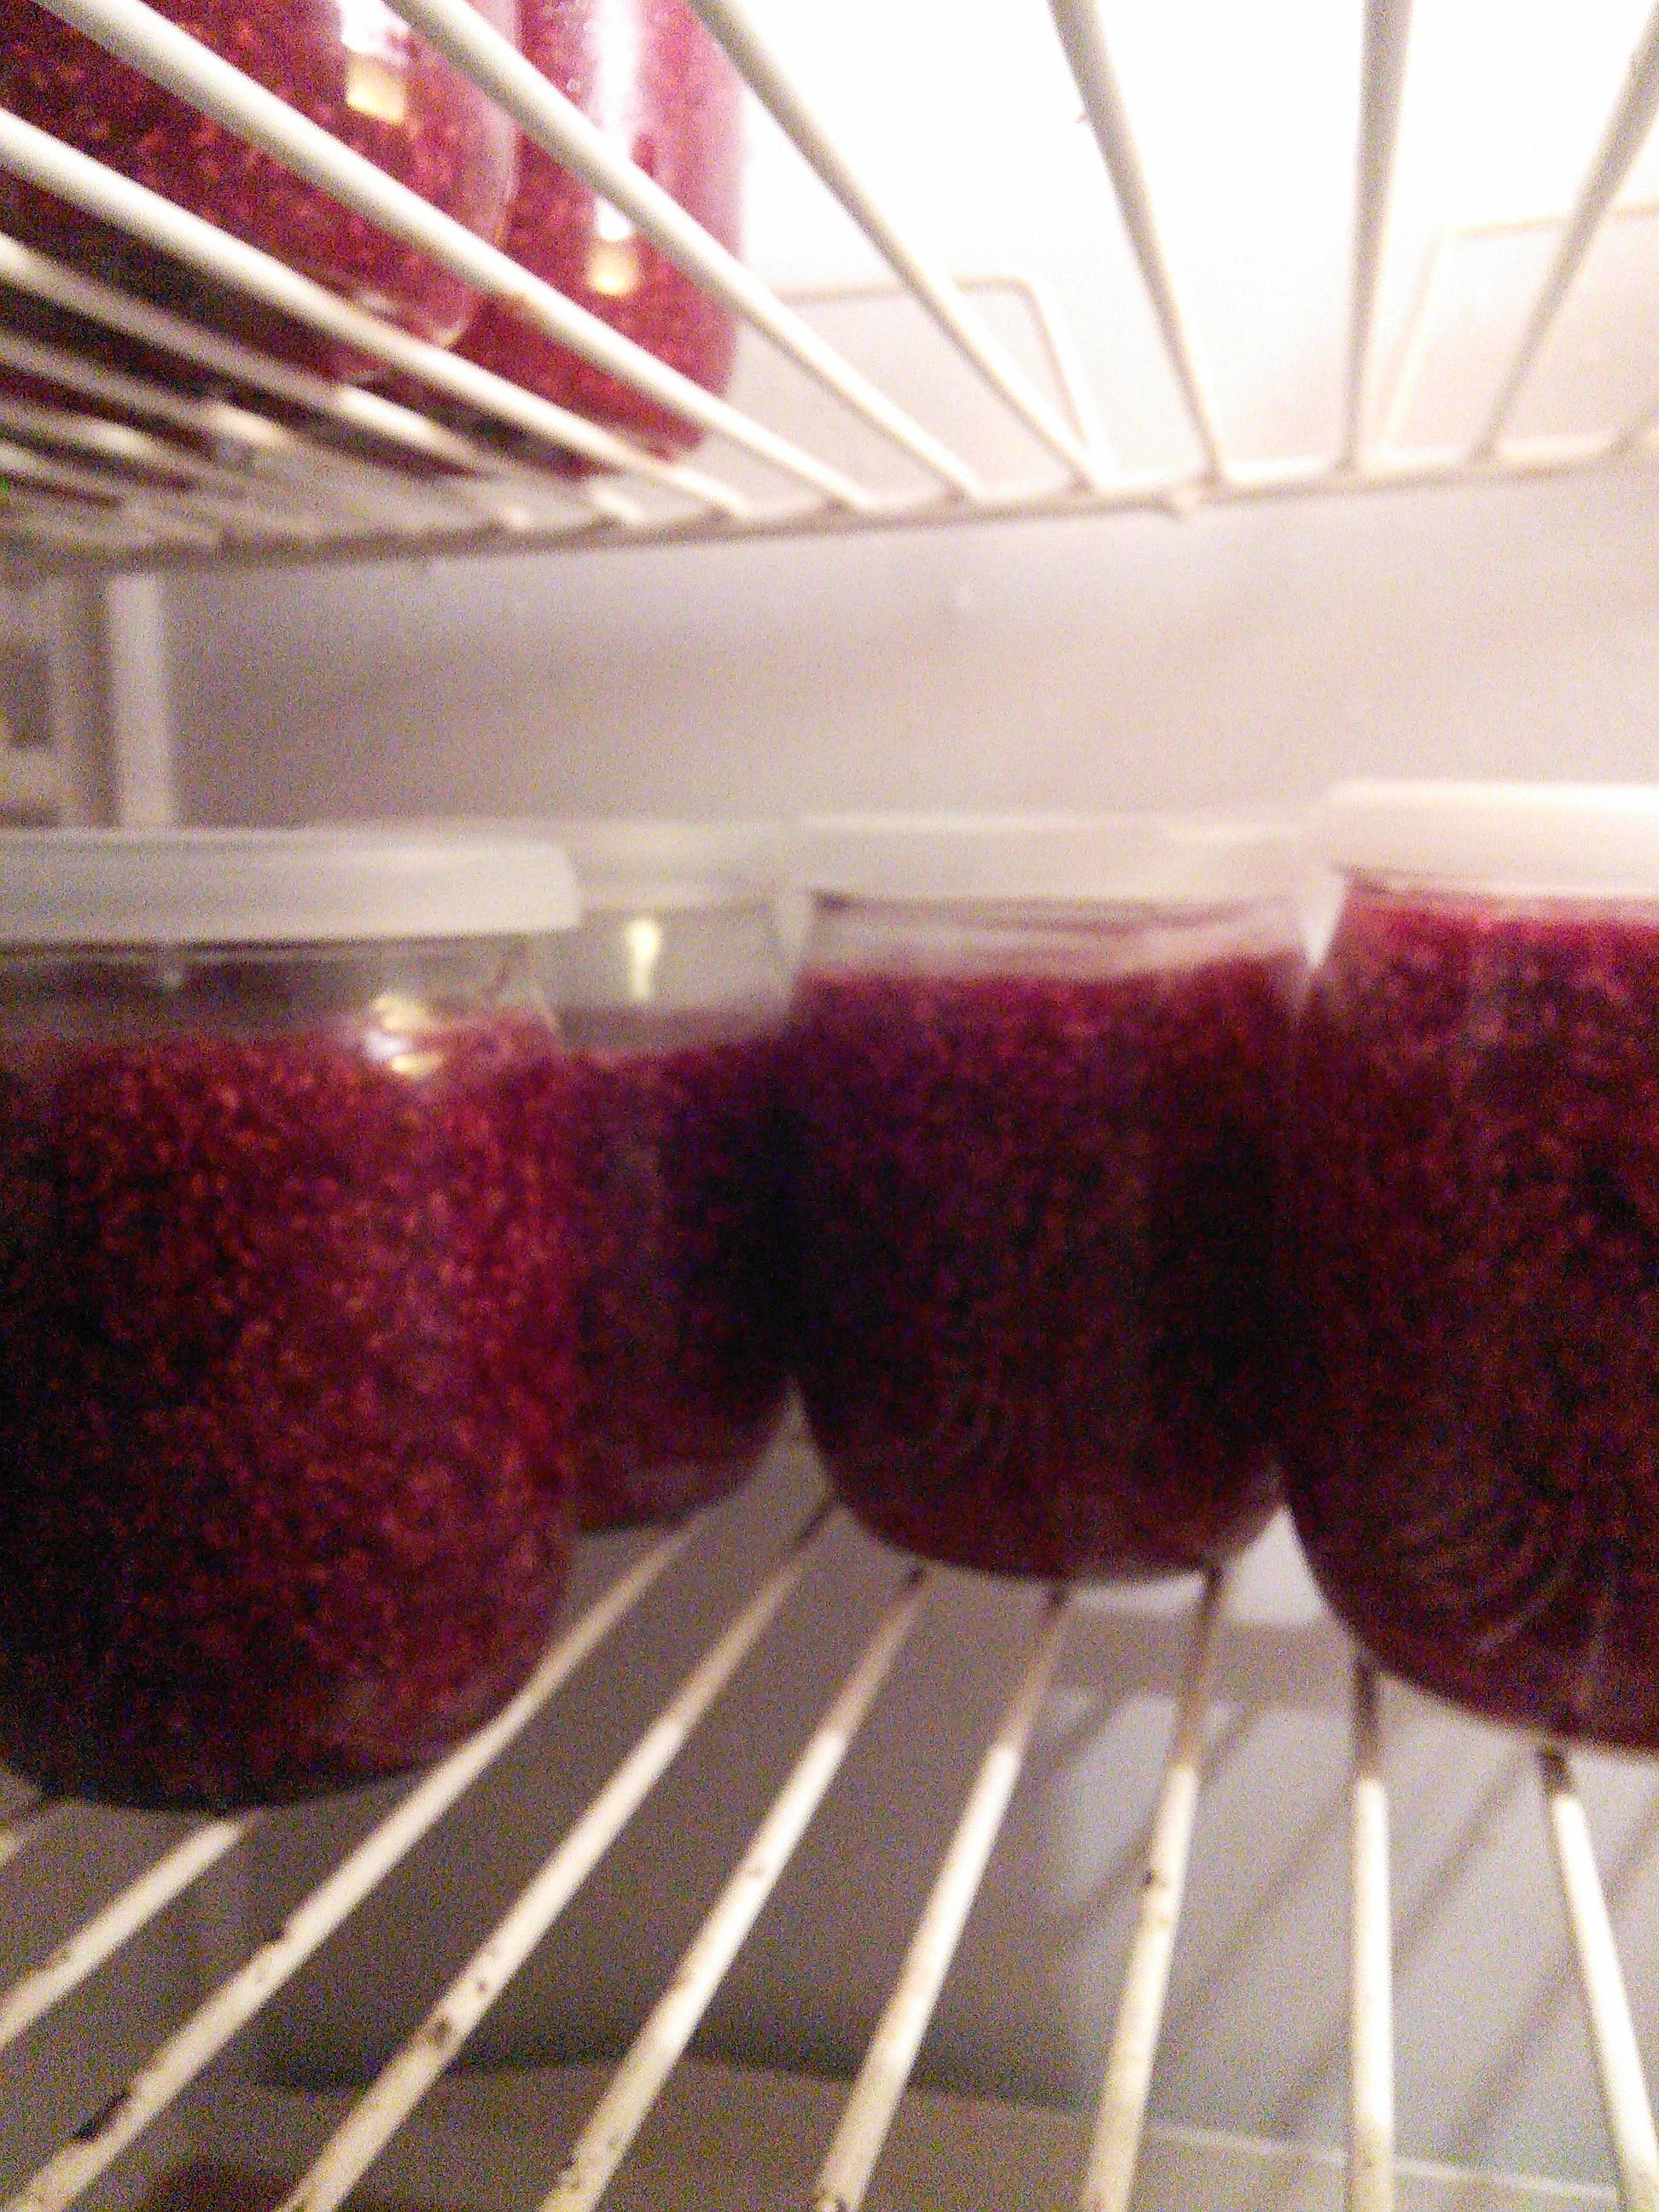 Как заморозить малину: хранение на зиму, мыть ли ягоды перед заморозкой, как правильно размораживать